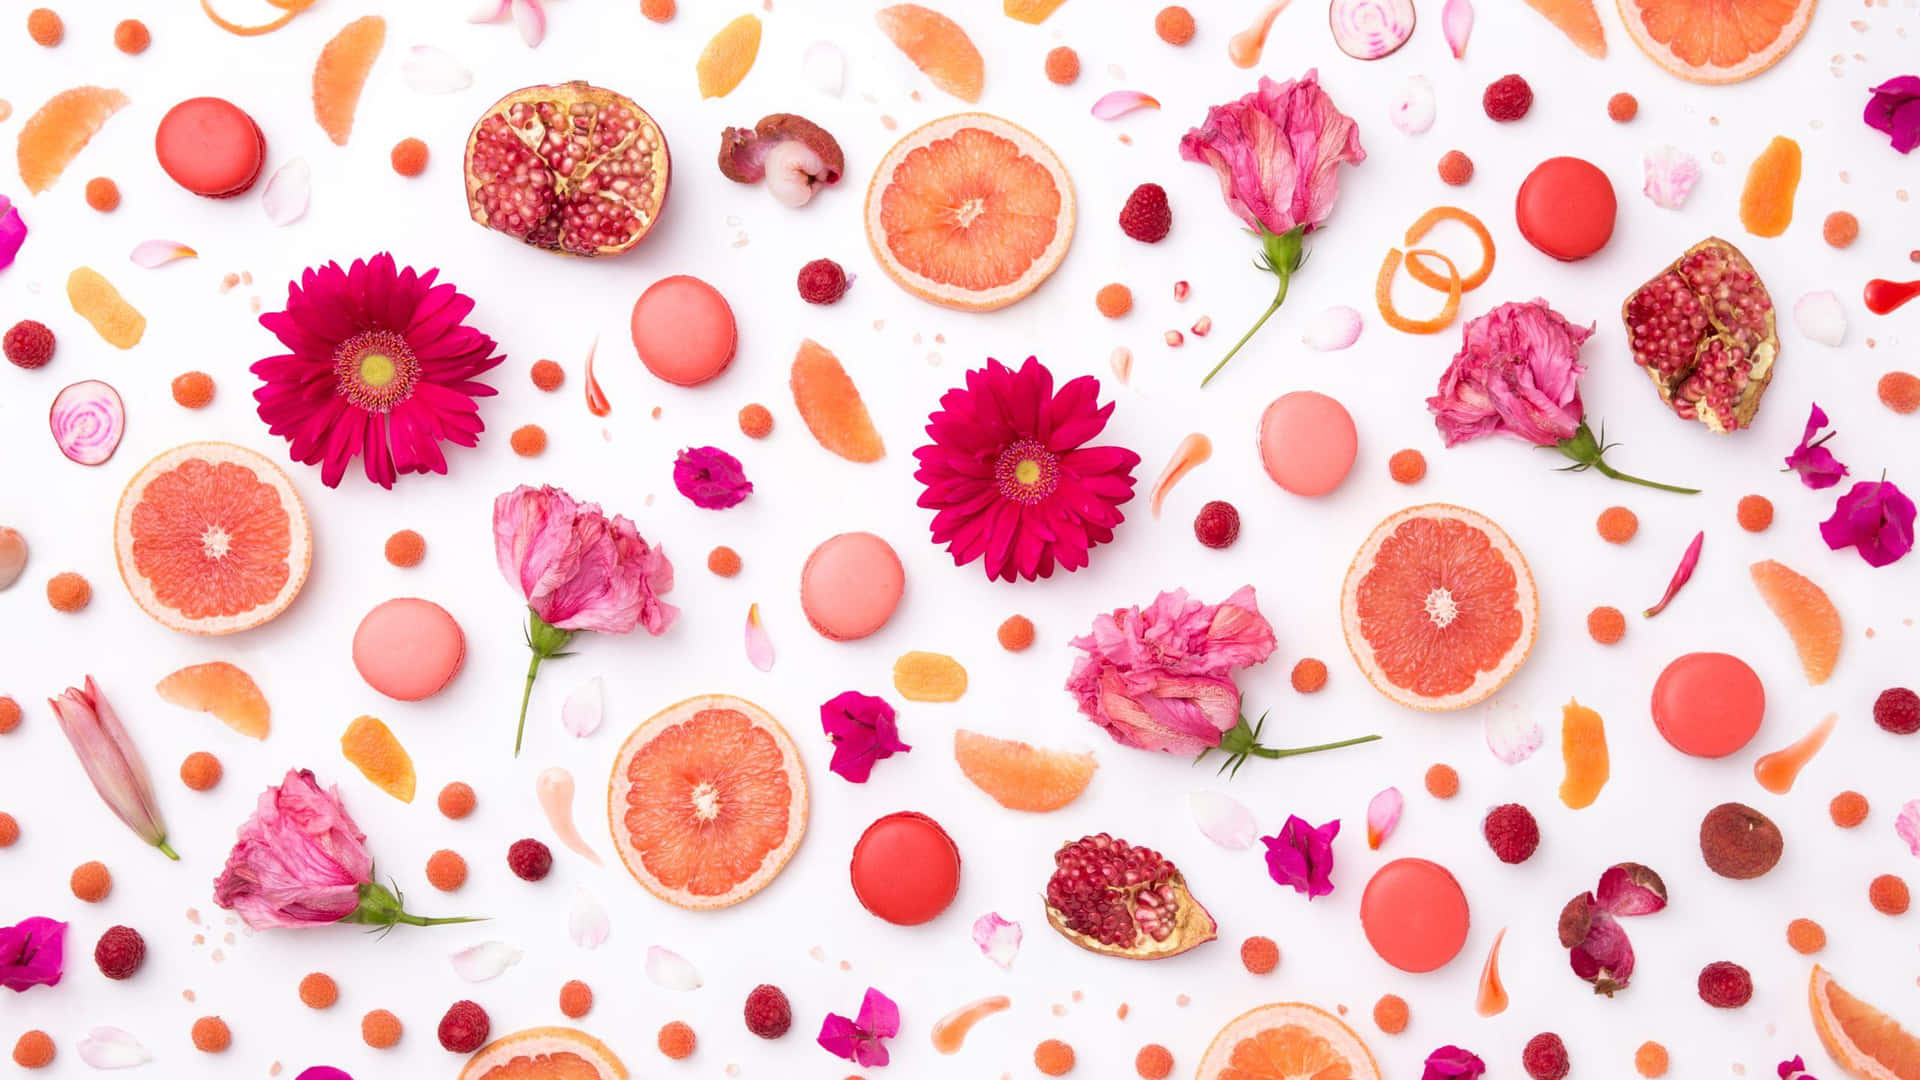 Imagende Alimentos Saludables Con Frutas Y Flores De Color Rosa